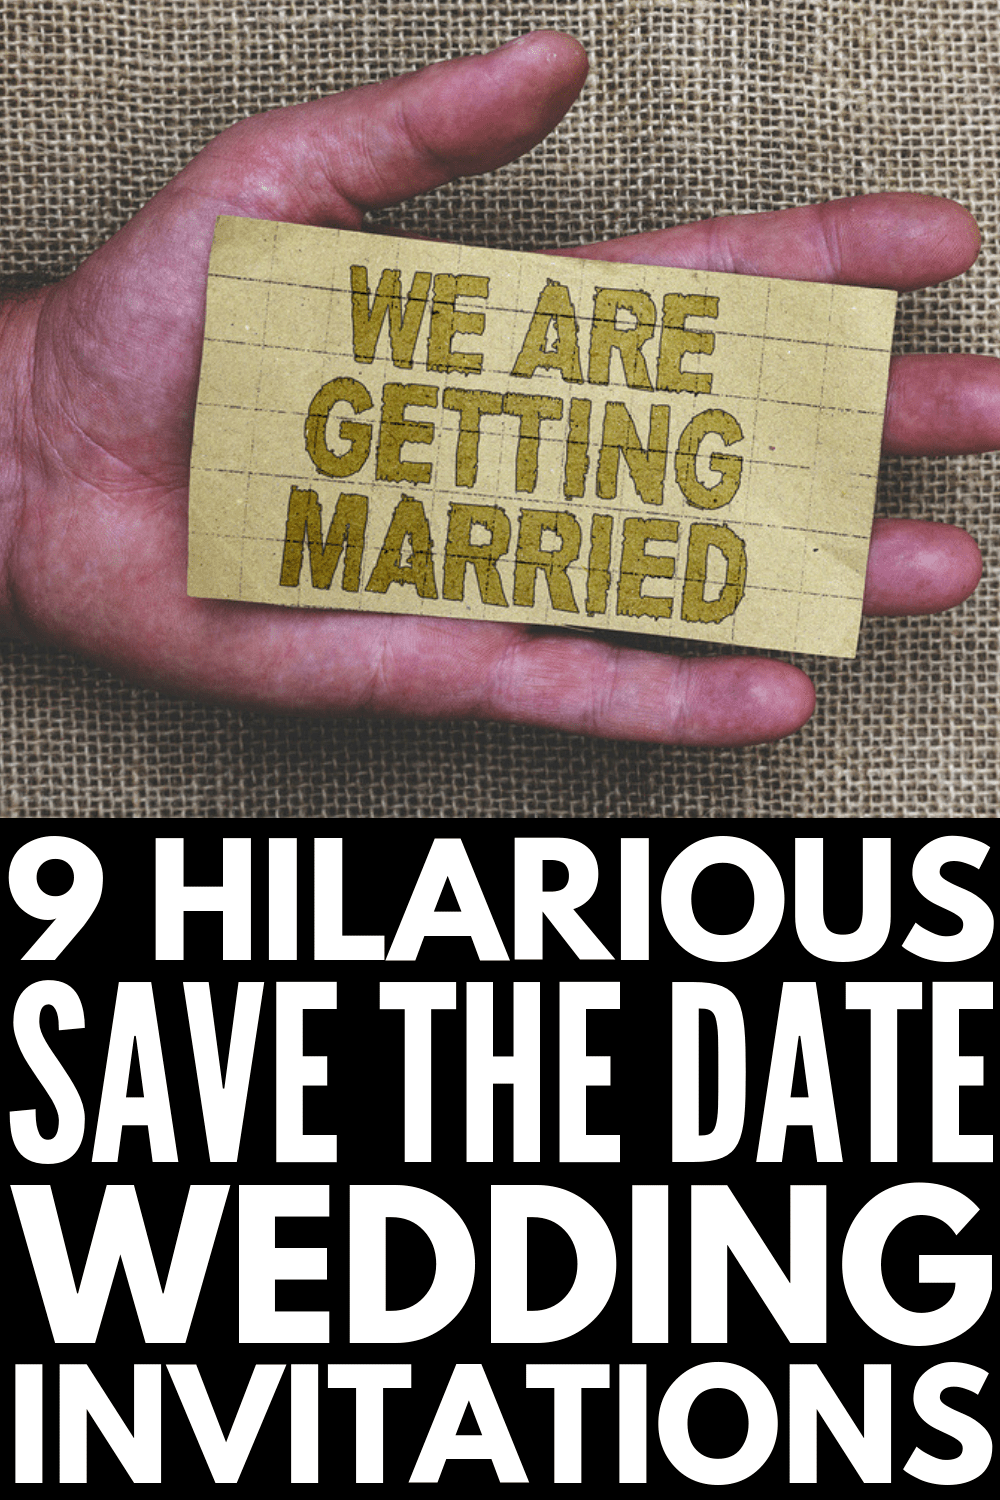 45 Unique Save the Date Wedding Invitation Ideas HD Wallpaper